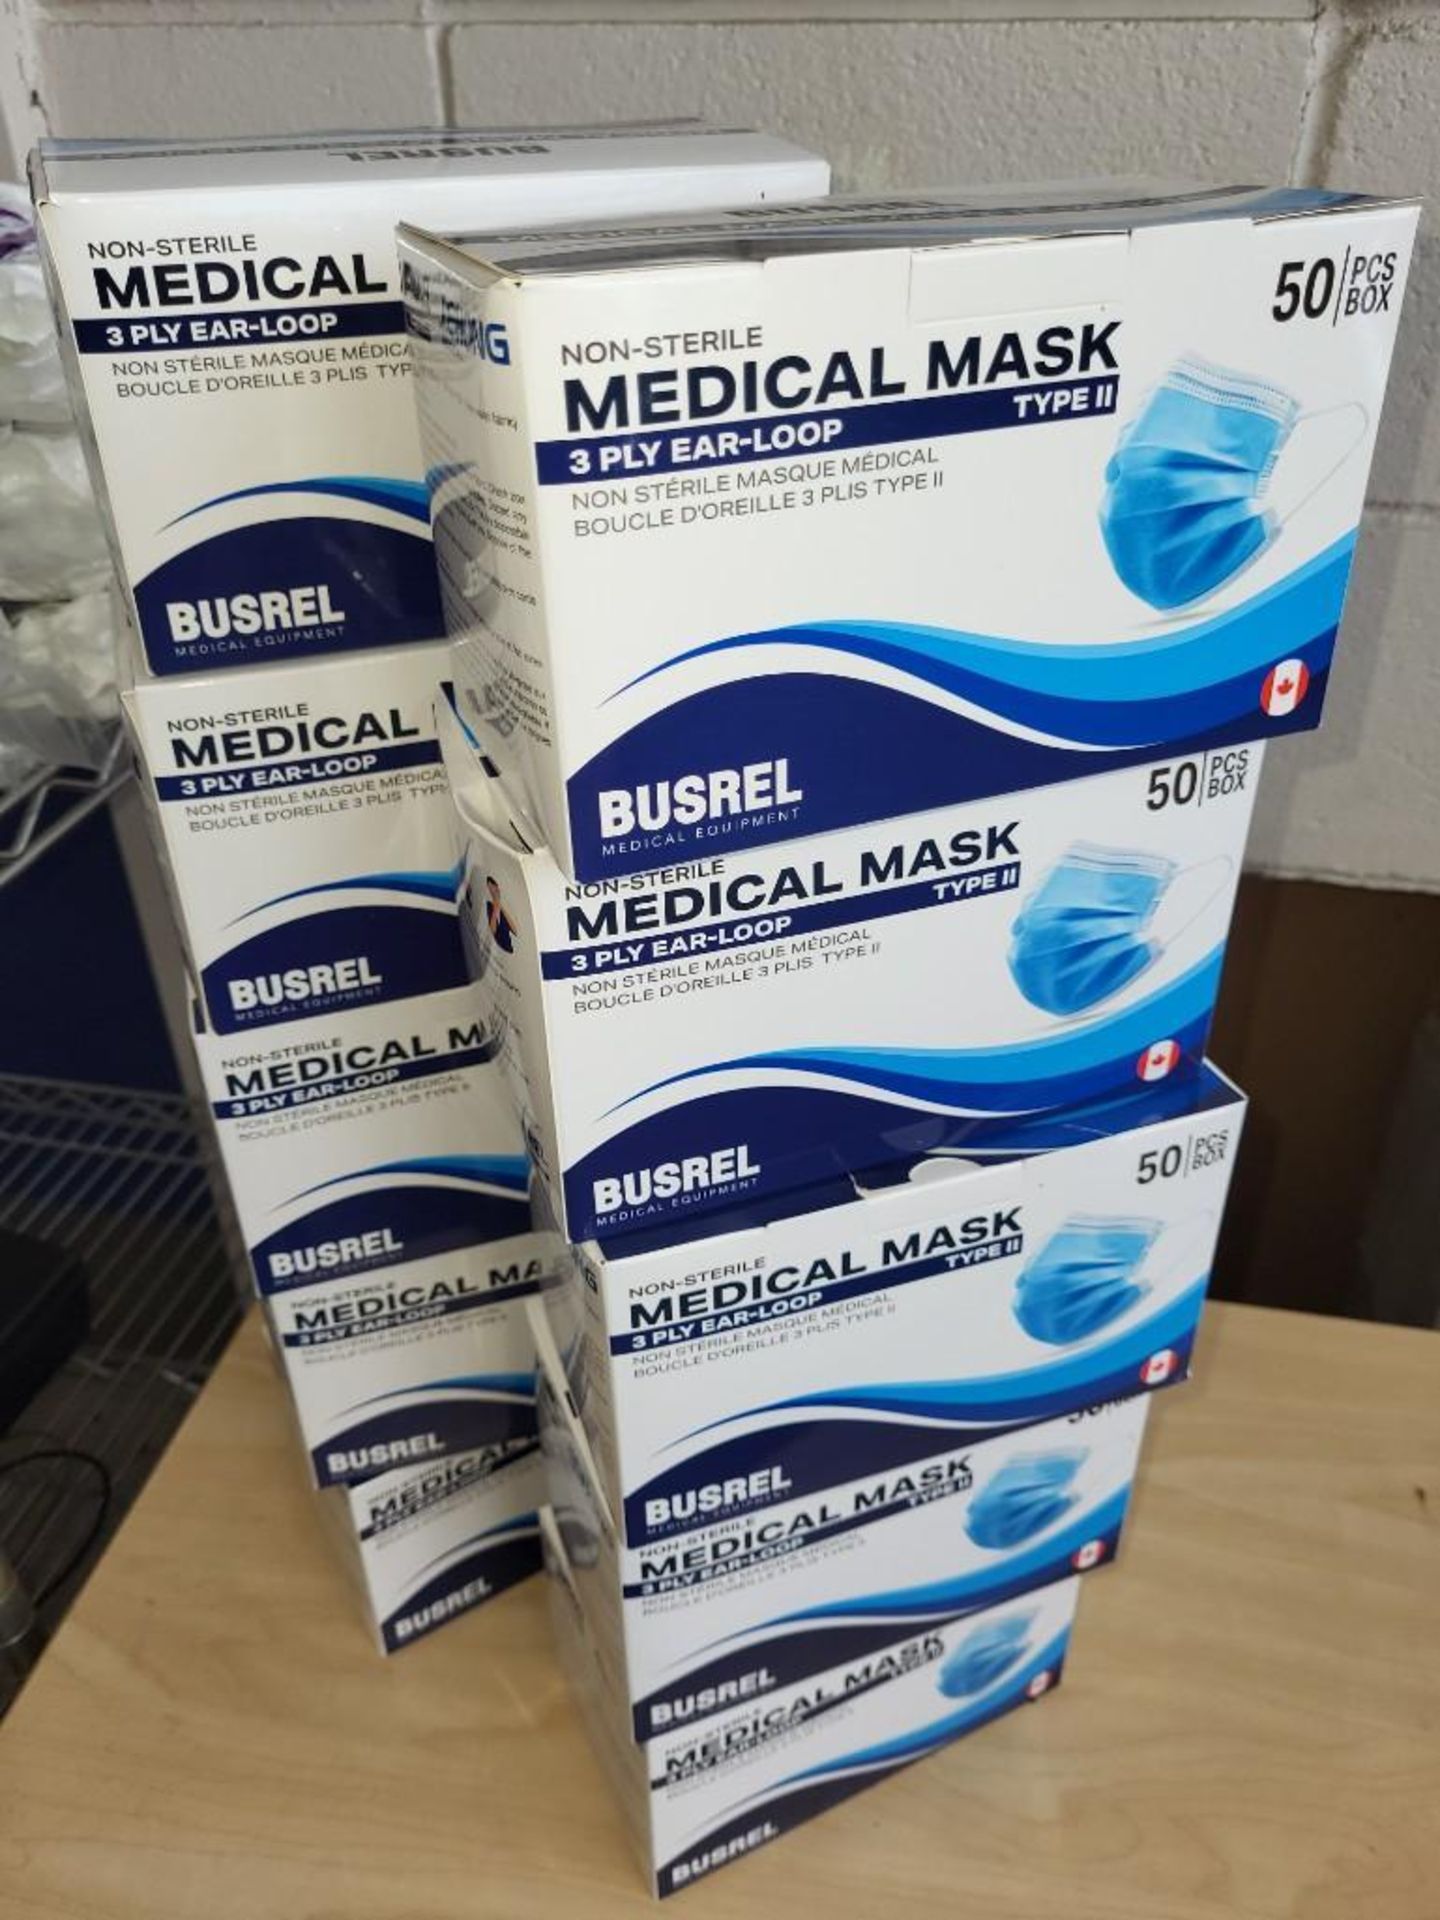 Boxes of 50 Medical Masks